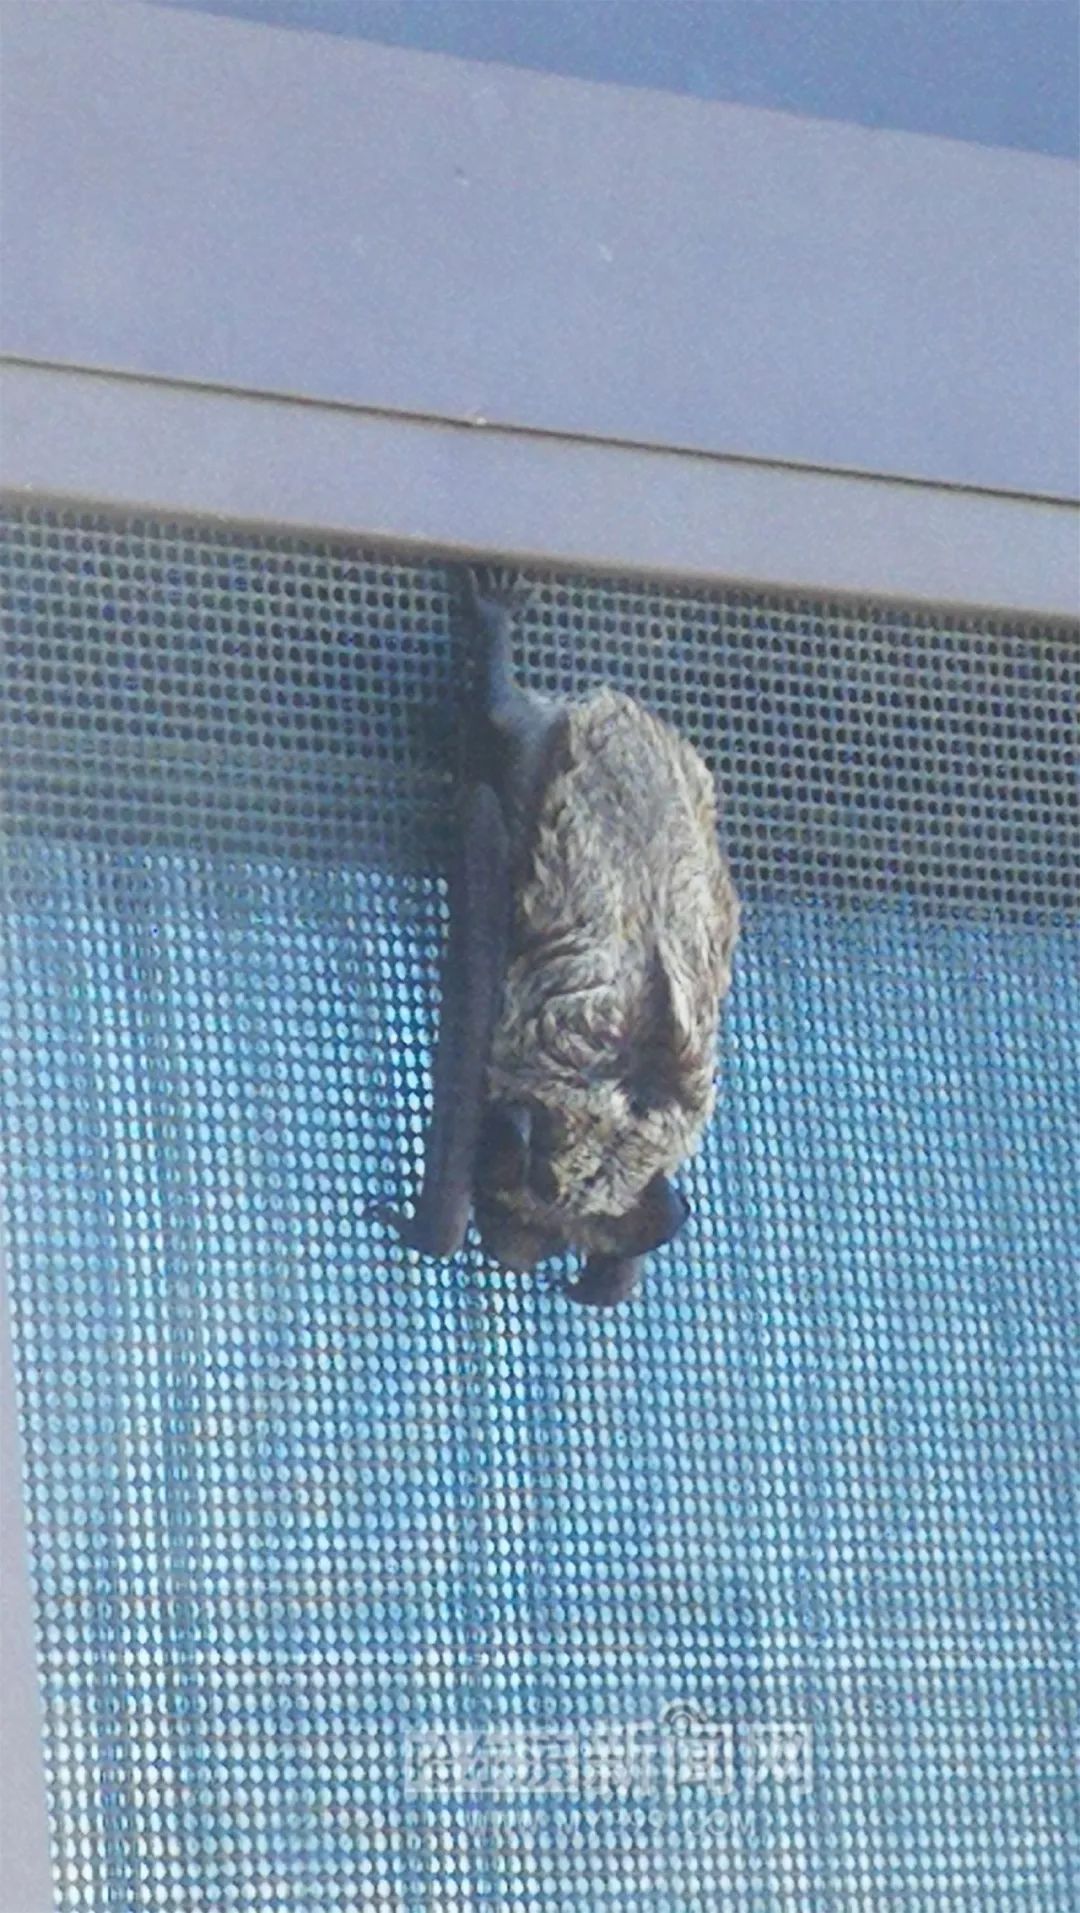 大清早一睁眼,看到有只蝙蝠挂在纱窗上